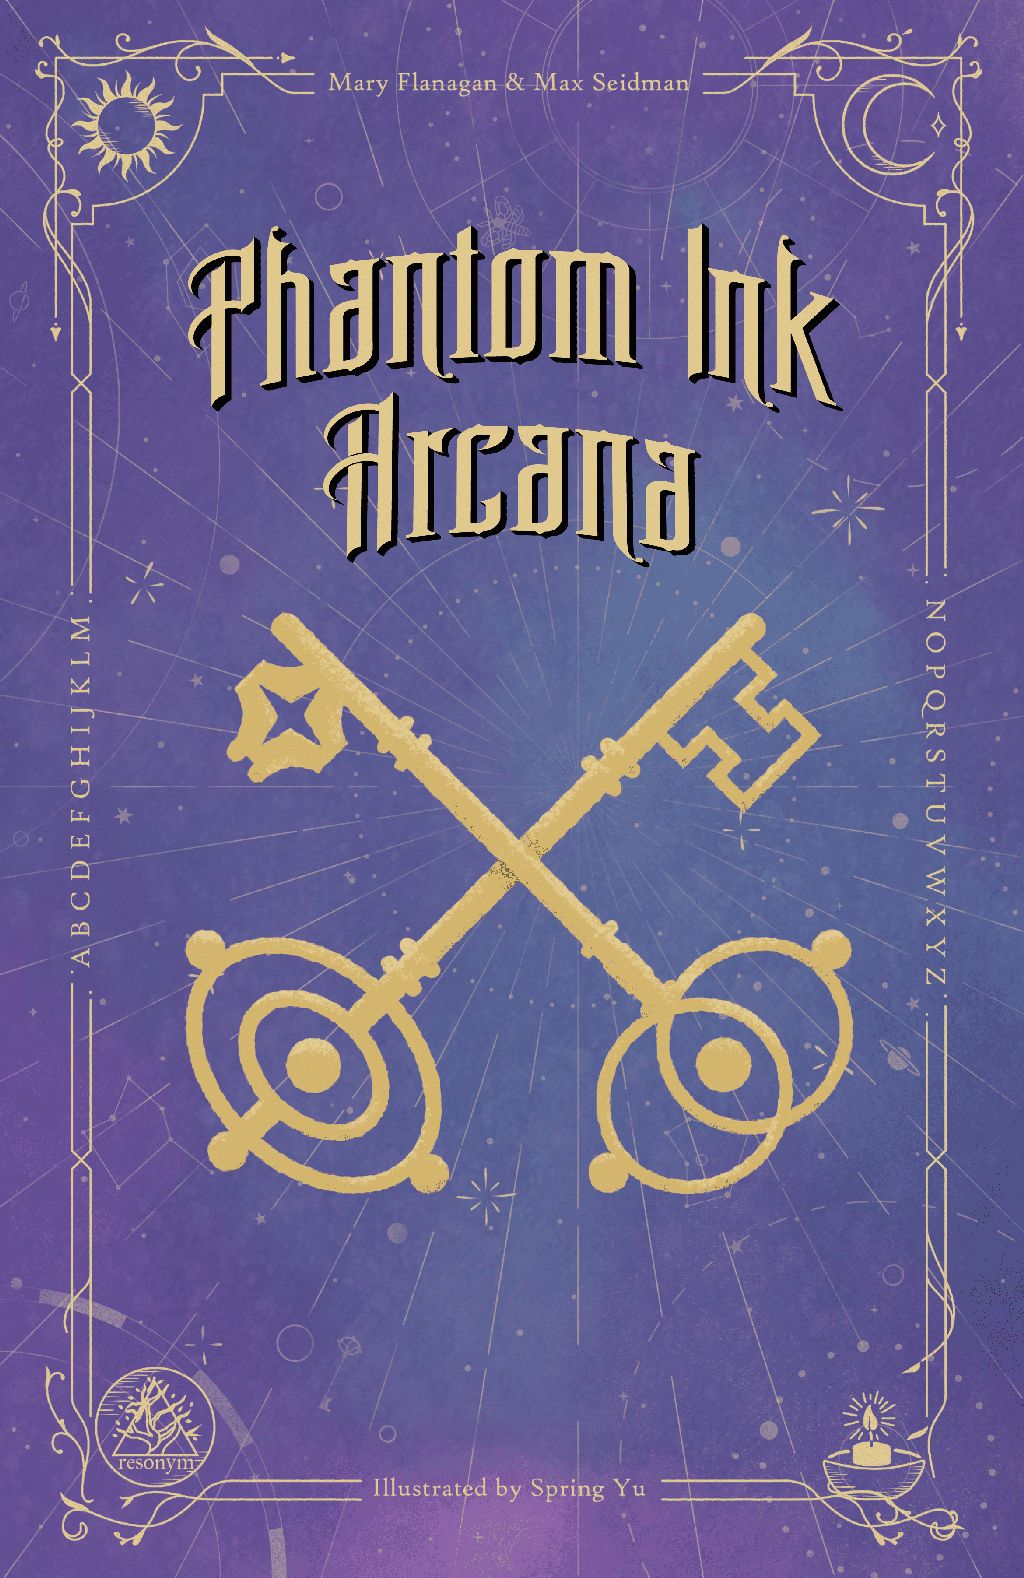 Phantom Ink Arcana okładka gry